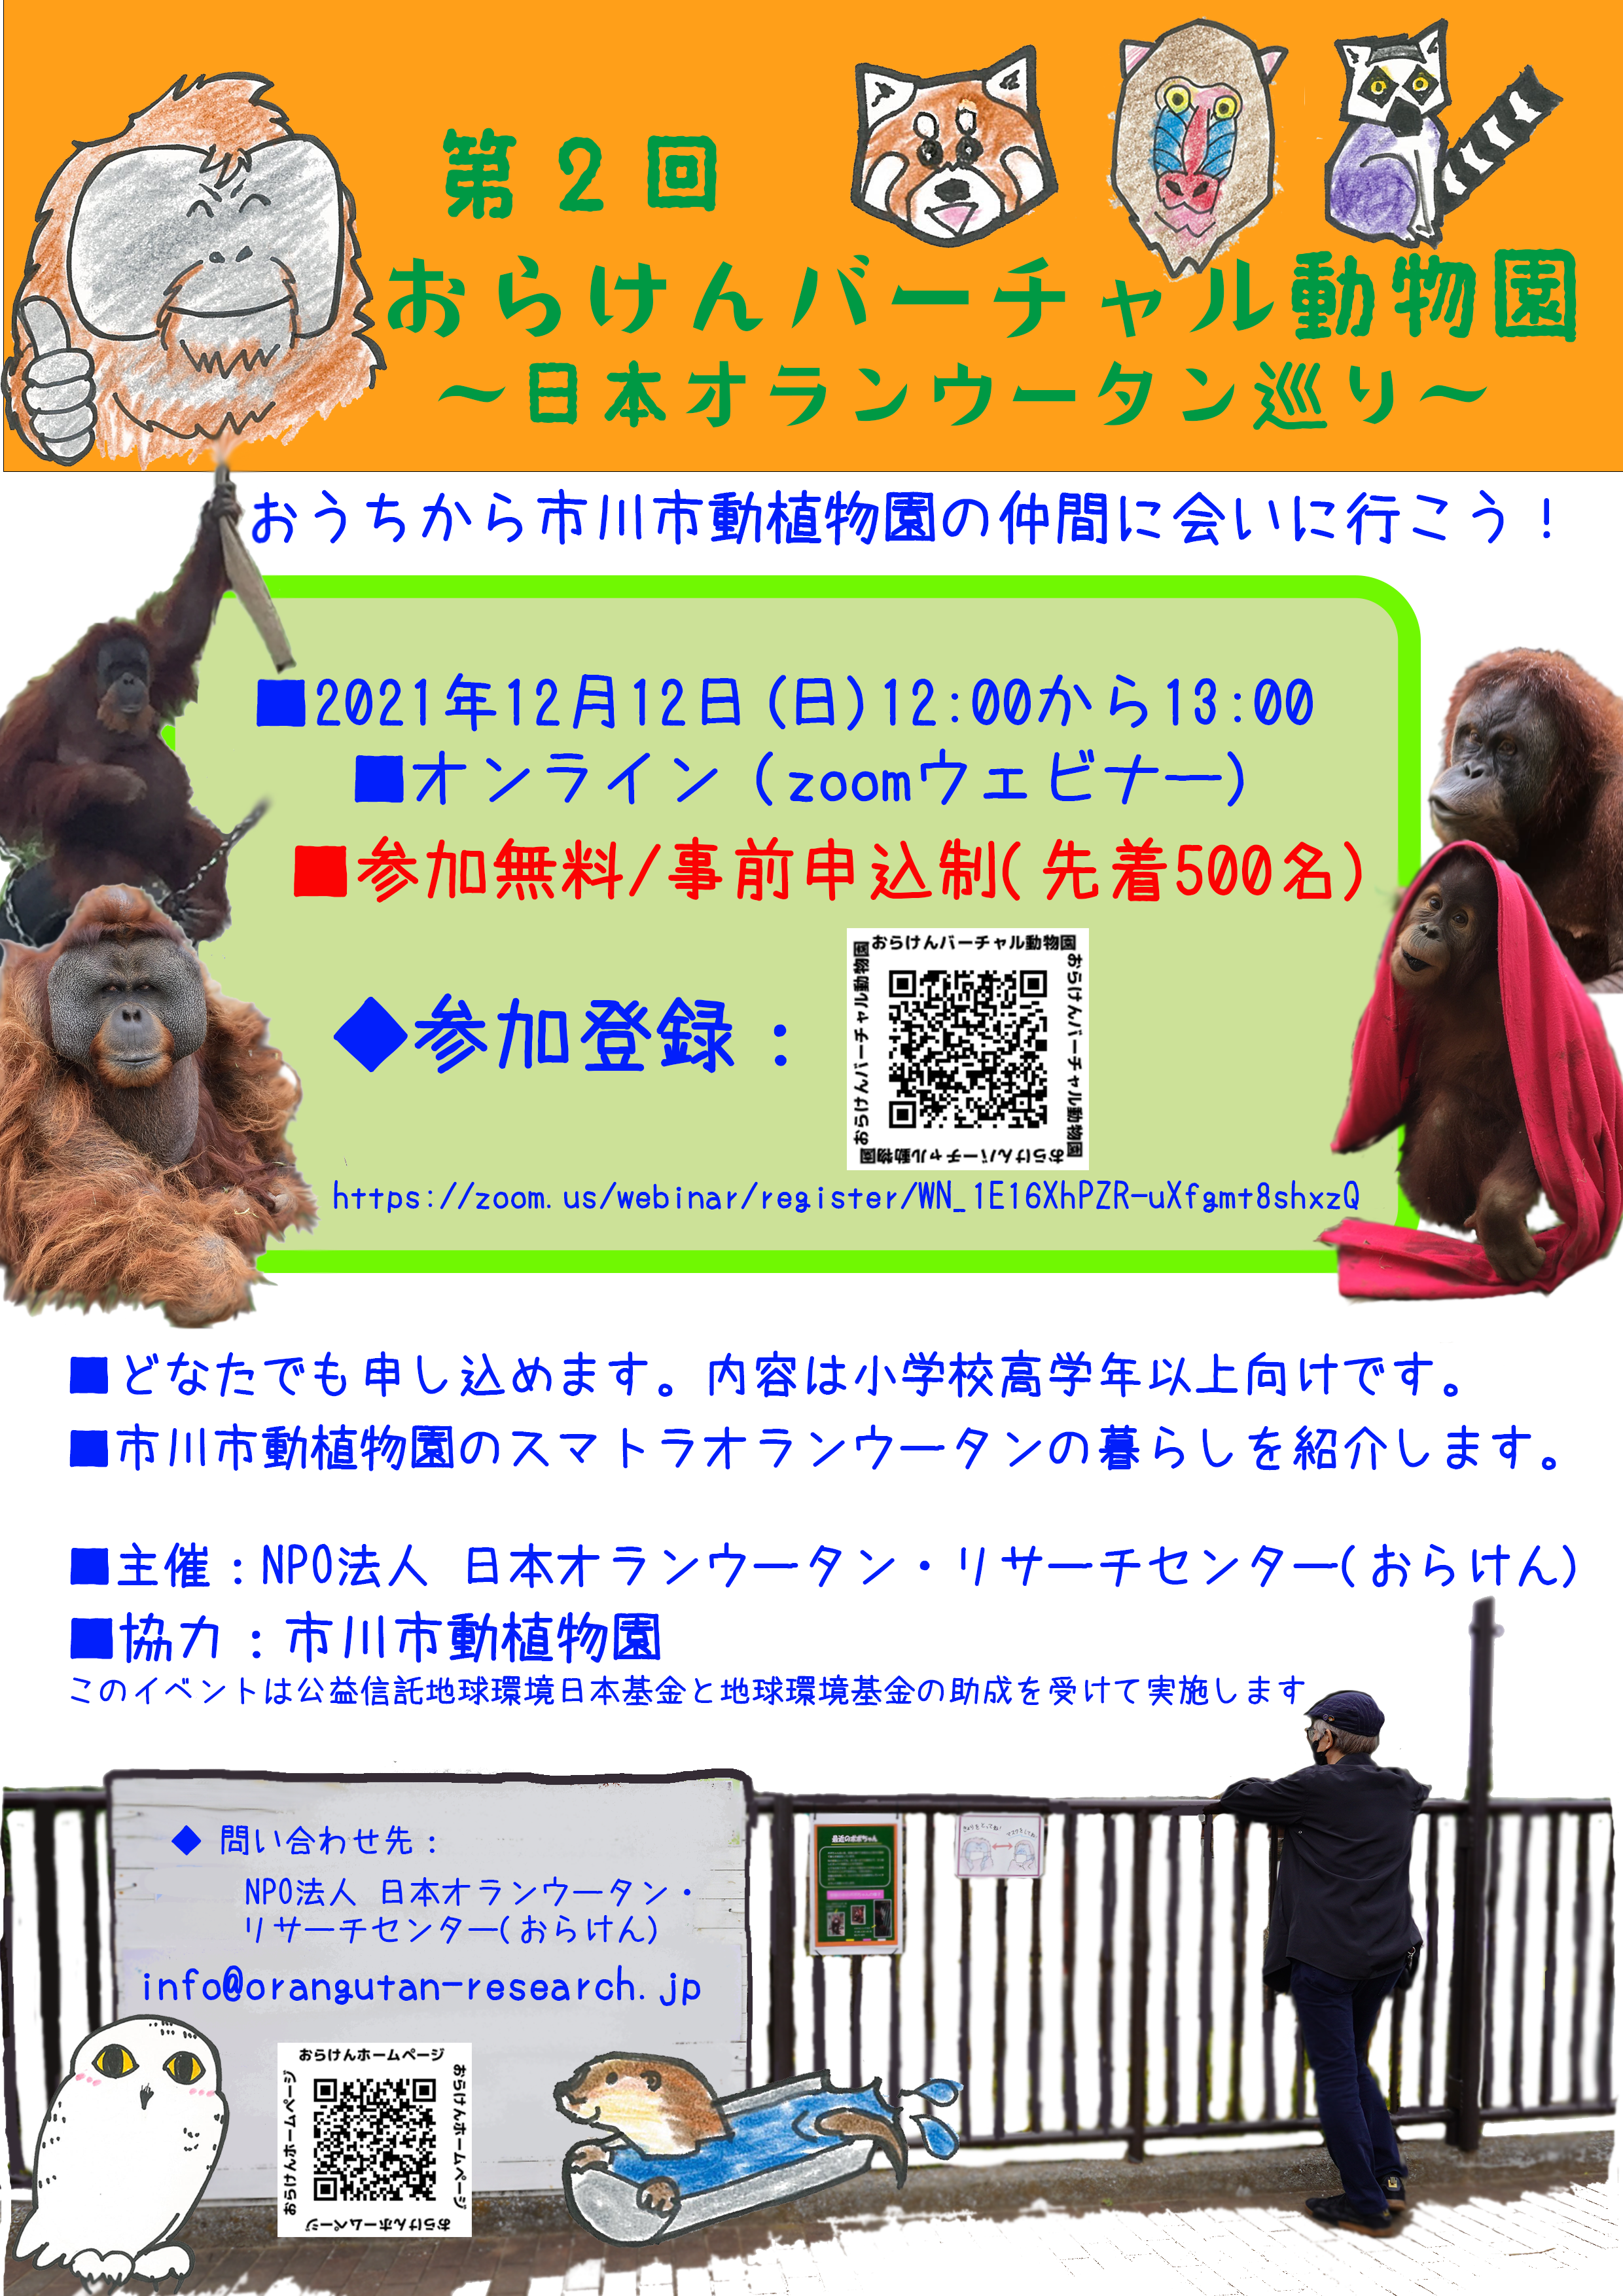 【※終了しました】第2回おらけんバーチャル動物園(市川市動植物園)を開催します！